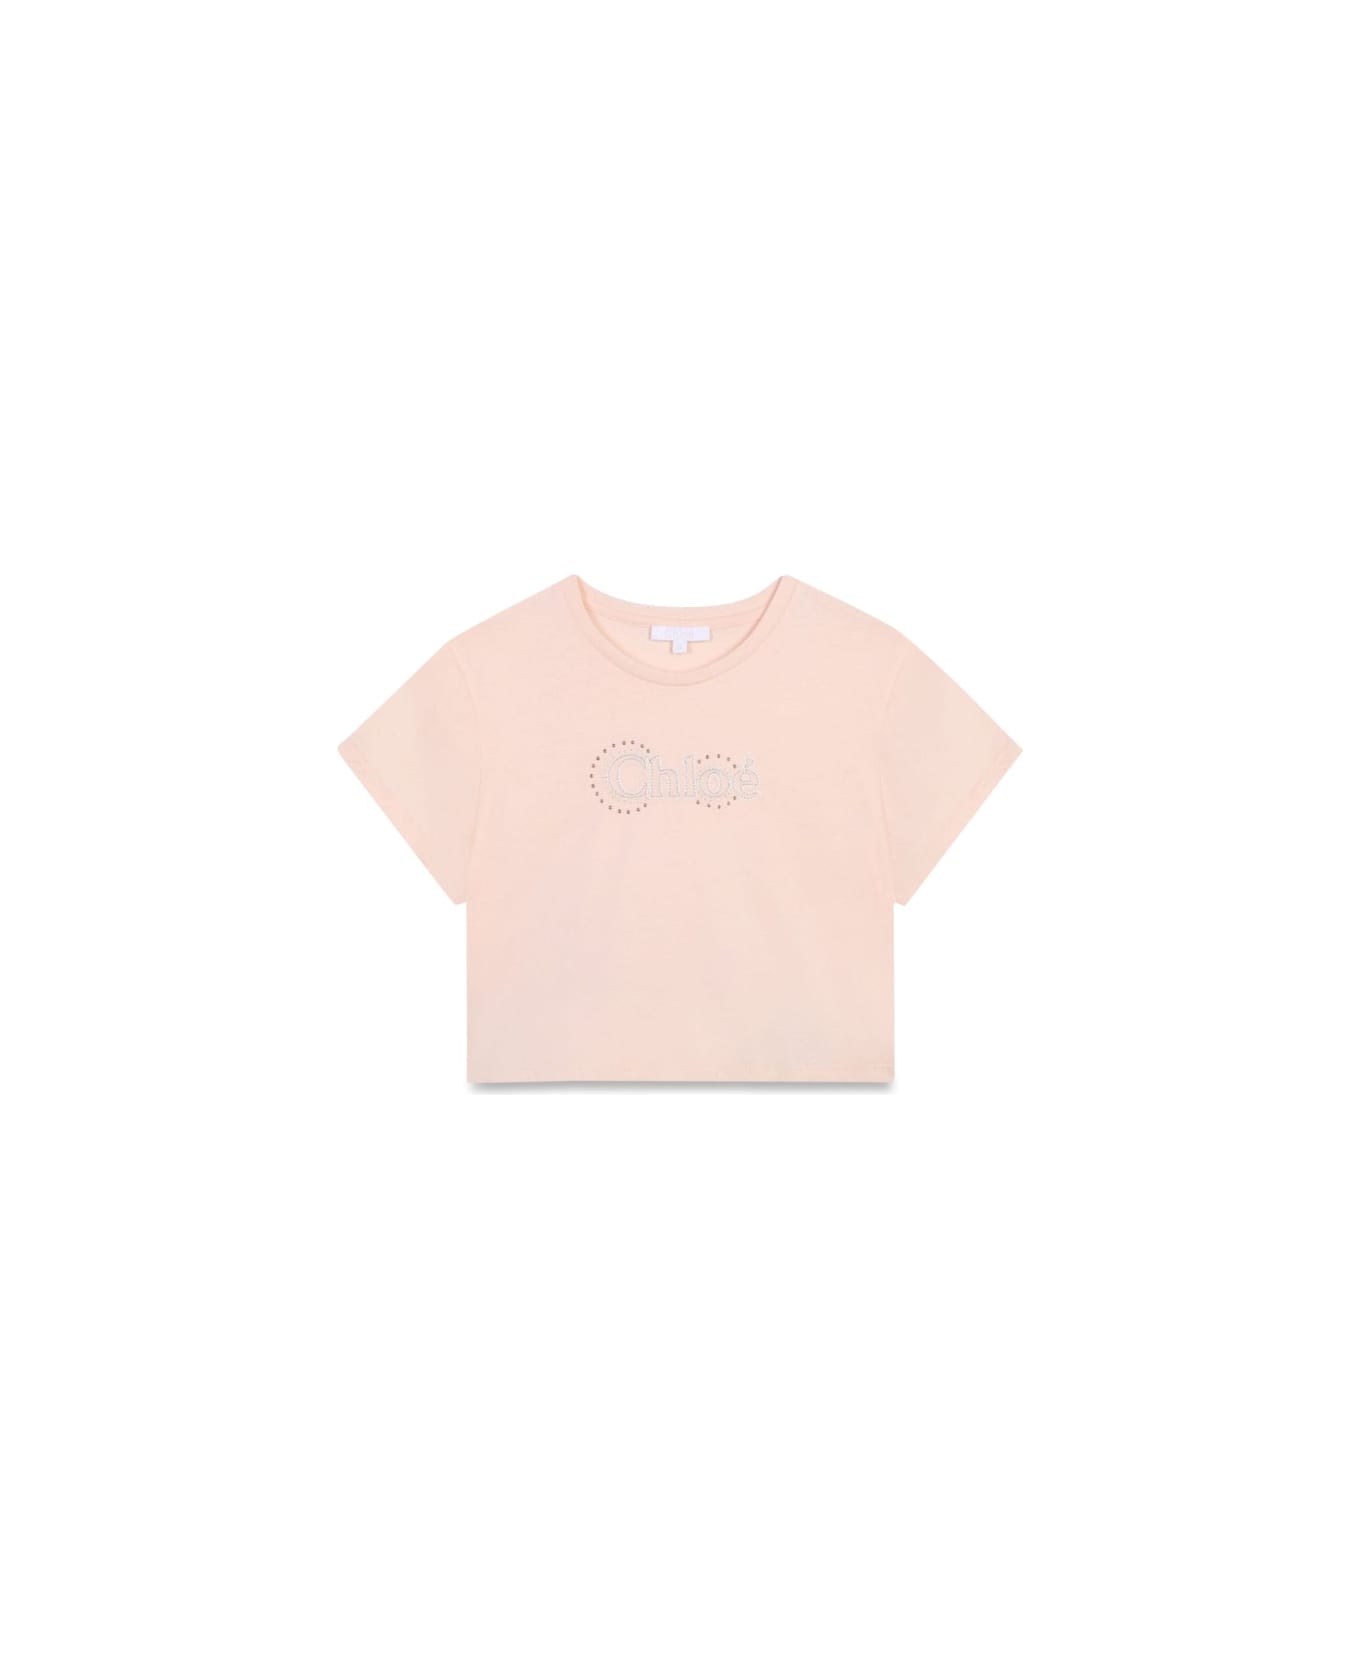 Chloé Tee Shirt - PINK